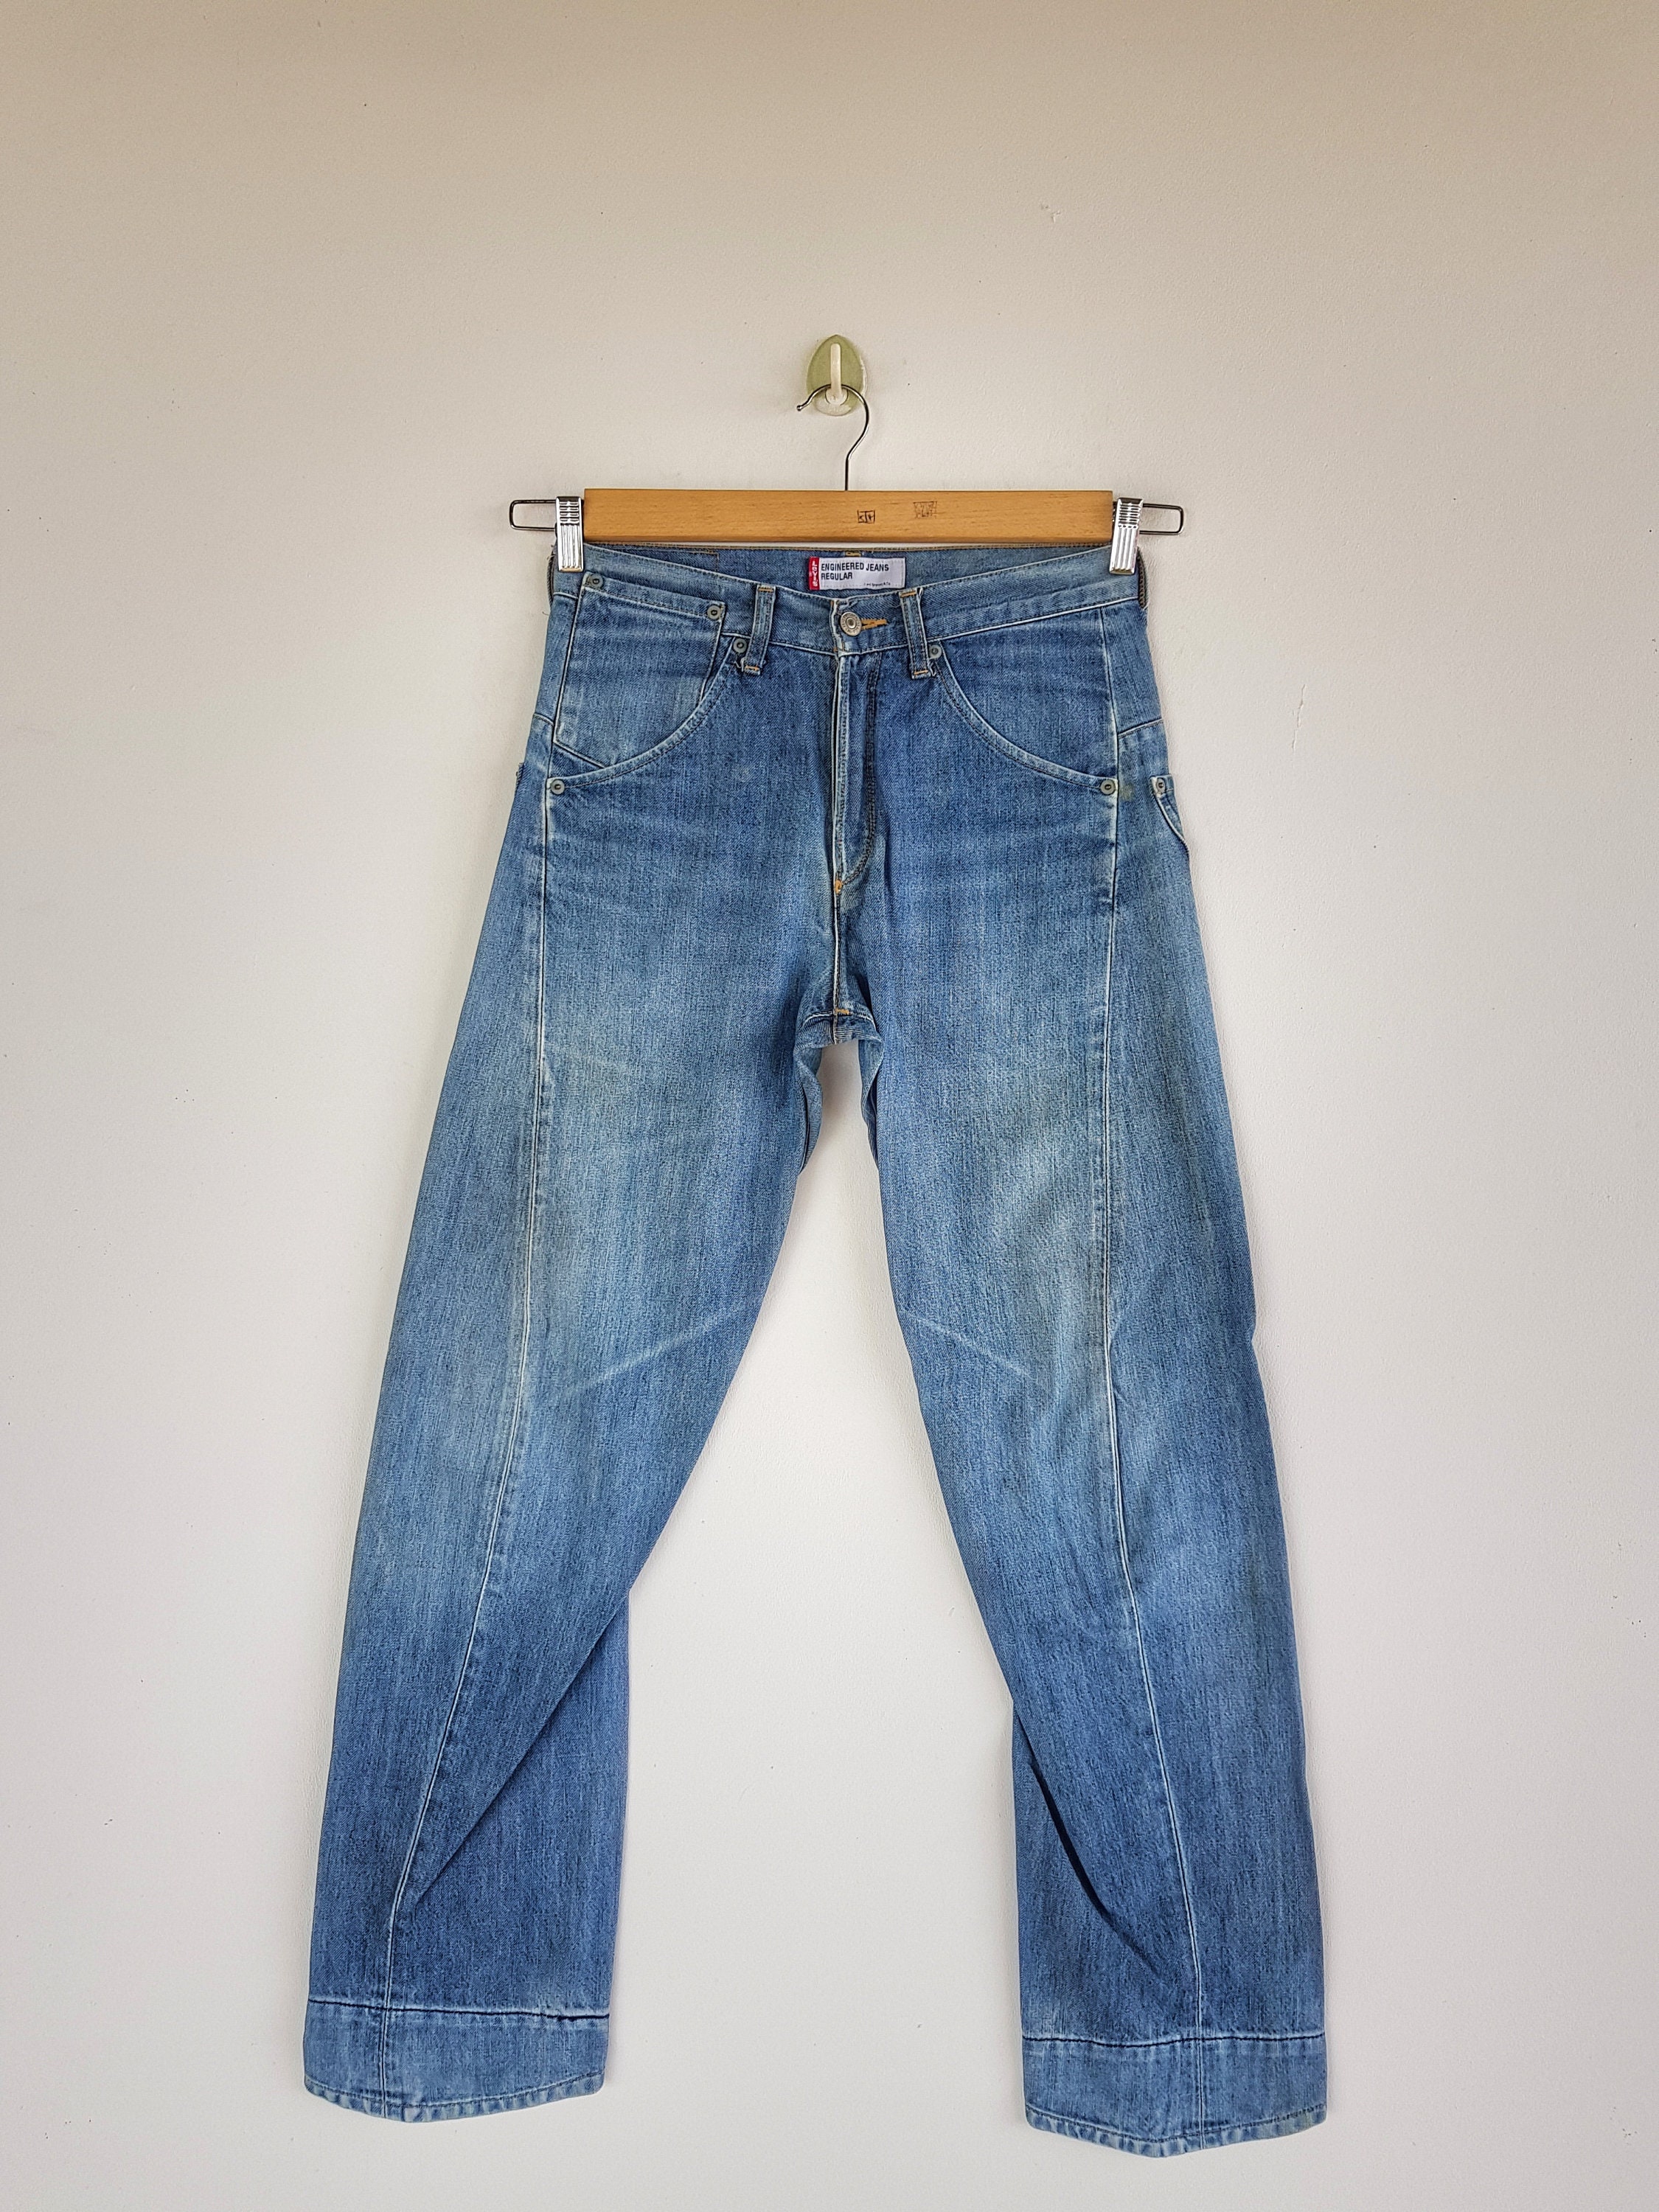 Size 30 90s Vintage Levis Engineer Jeans Pants Levi's - Etsy UK